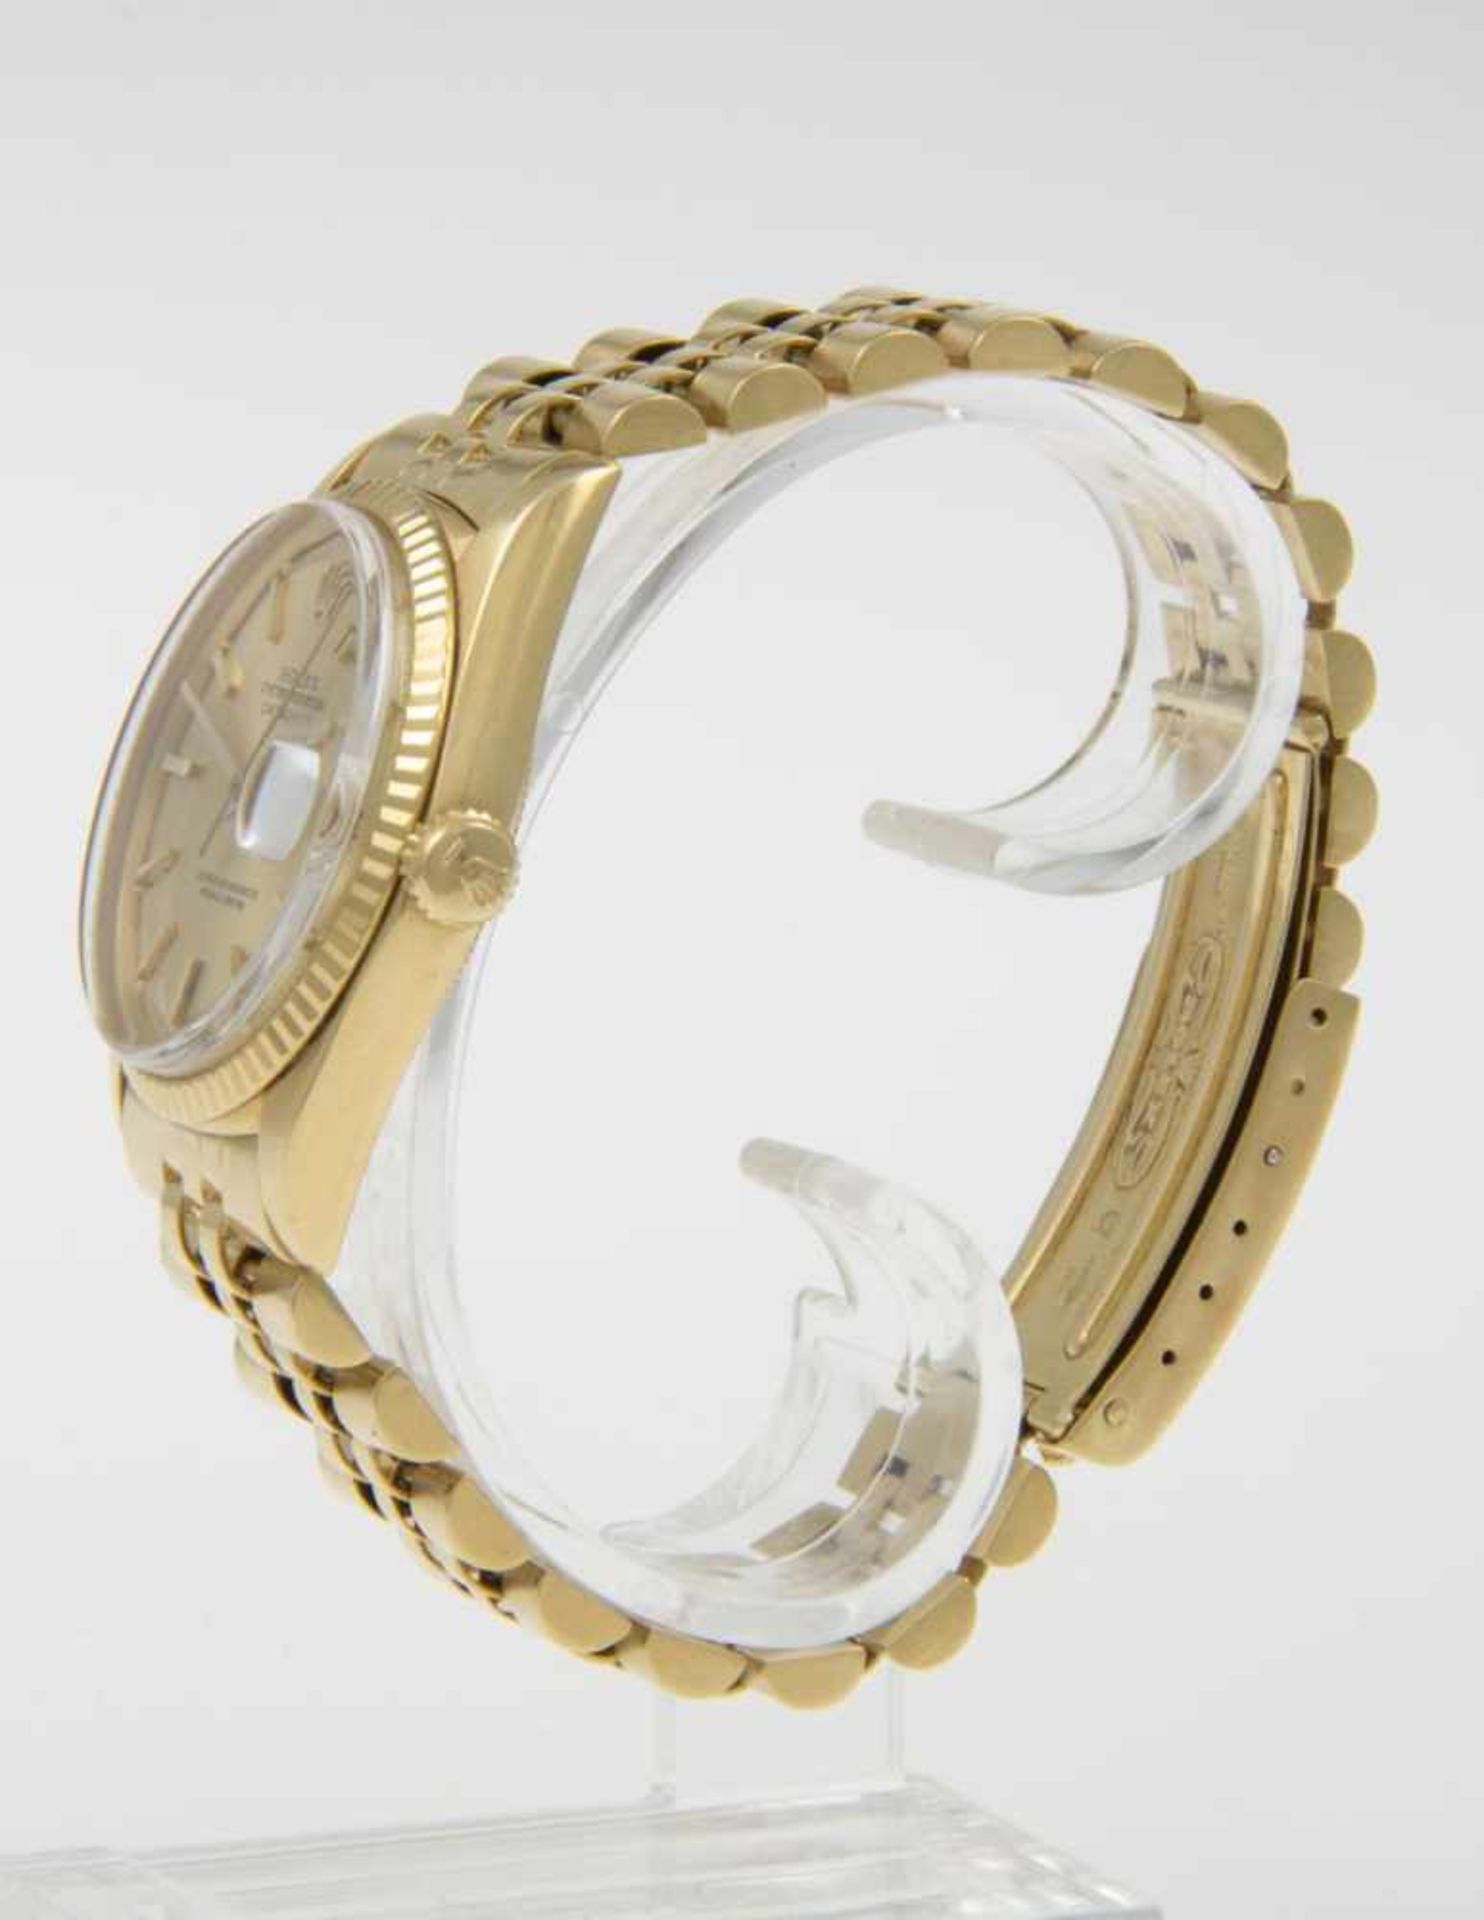 Rolex-Armbanduhr DatejustGehäuse und Armband aus Gelbgold 750. Plexiglas. Vergoldetes Zifferblatt - Bild 2 aus 4